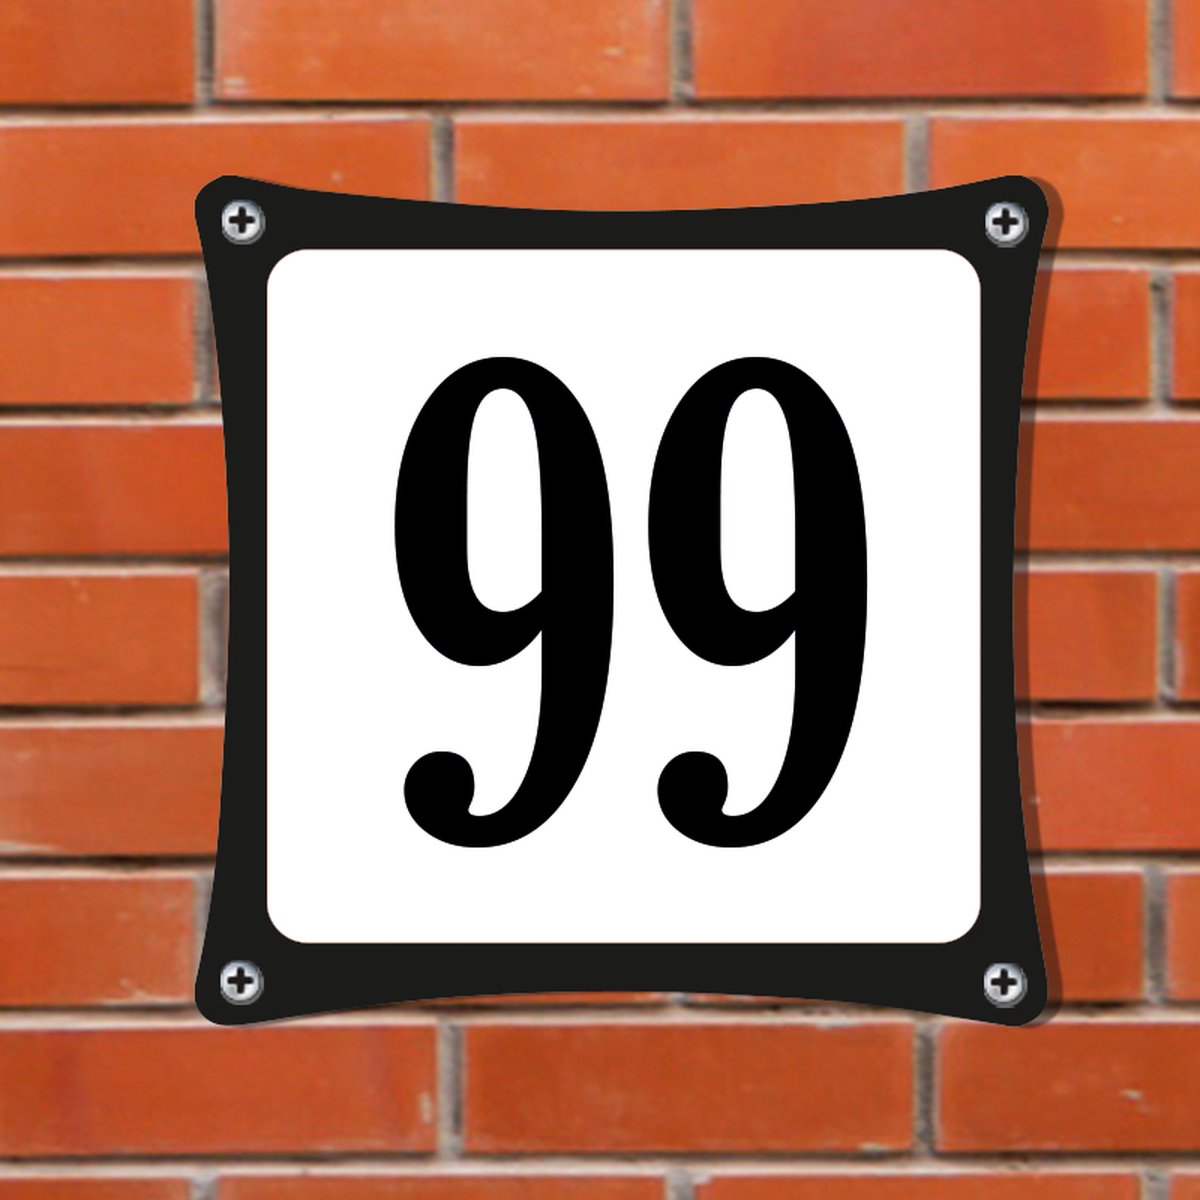 Namengigant Huisnummerbord Emaille-Look - Nummer 99 - Standaard - 10 x 10 cm | incl. schroeven